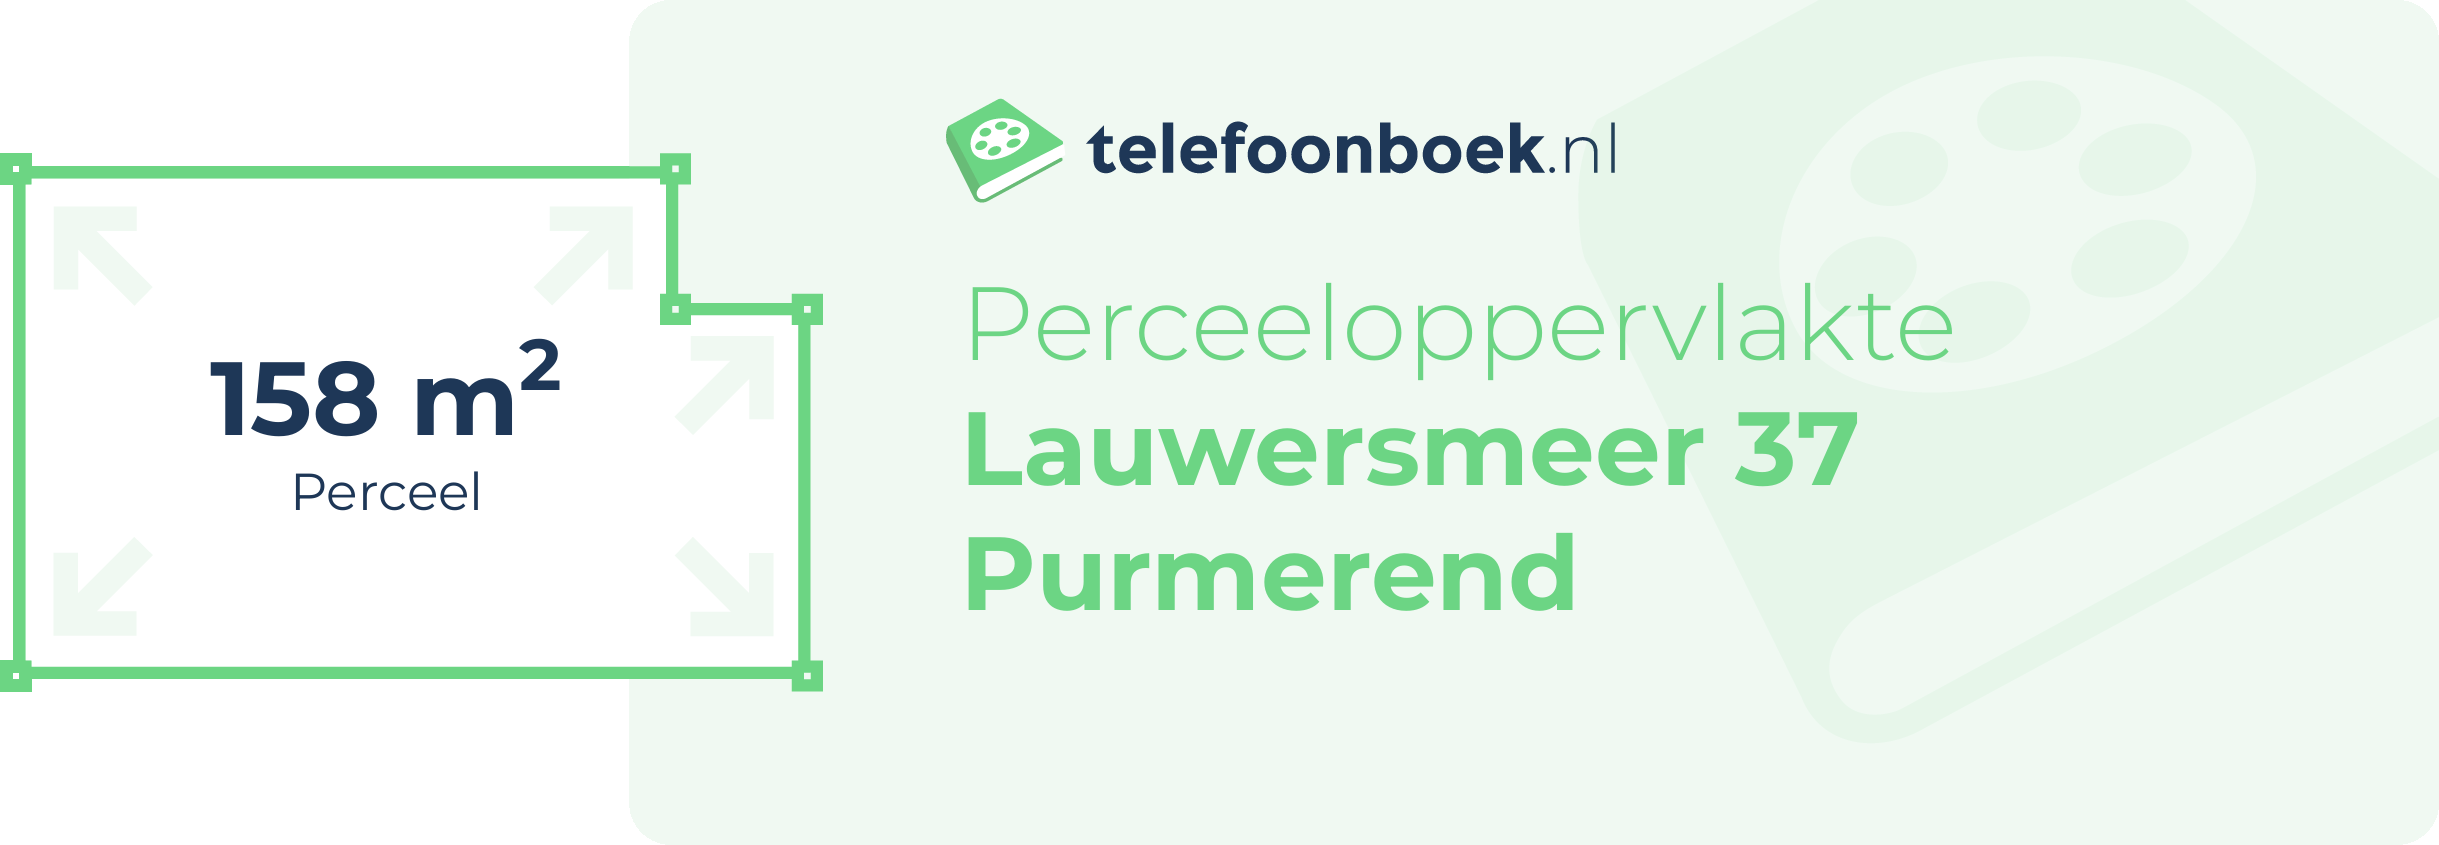 Perceeloppervlakte Lauwersmeer 37 Purmerend